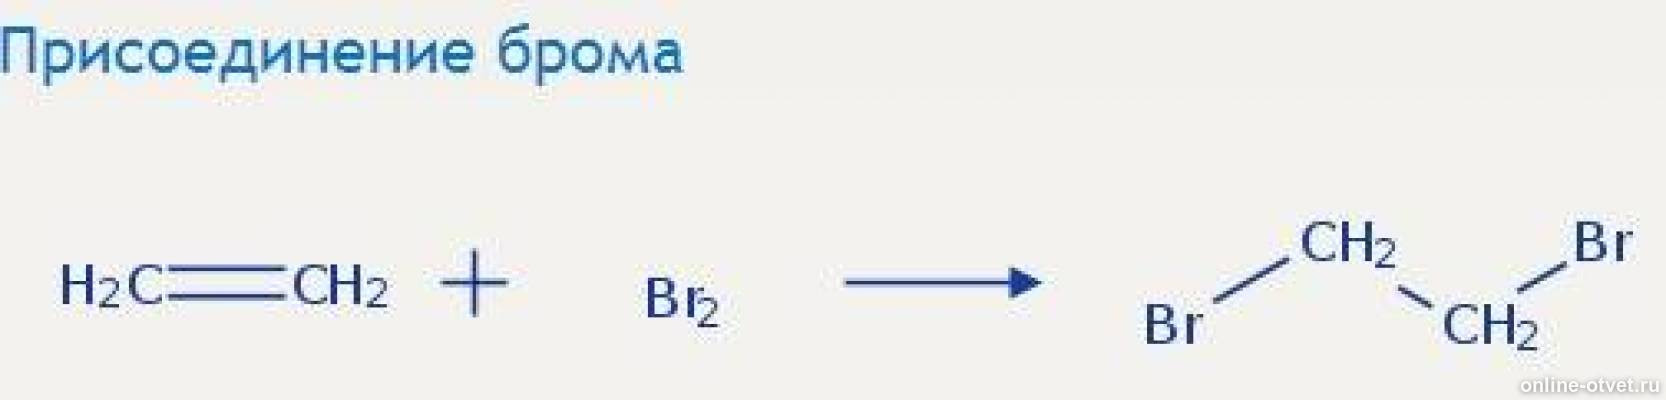 Присоединение брома. Этанол+CL. Реакция присоединения брома. C2h4 = диэтиловый эфир. 3 этилена с бромом